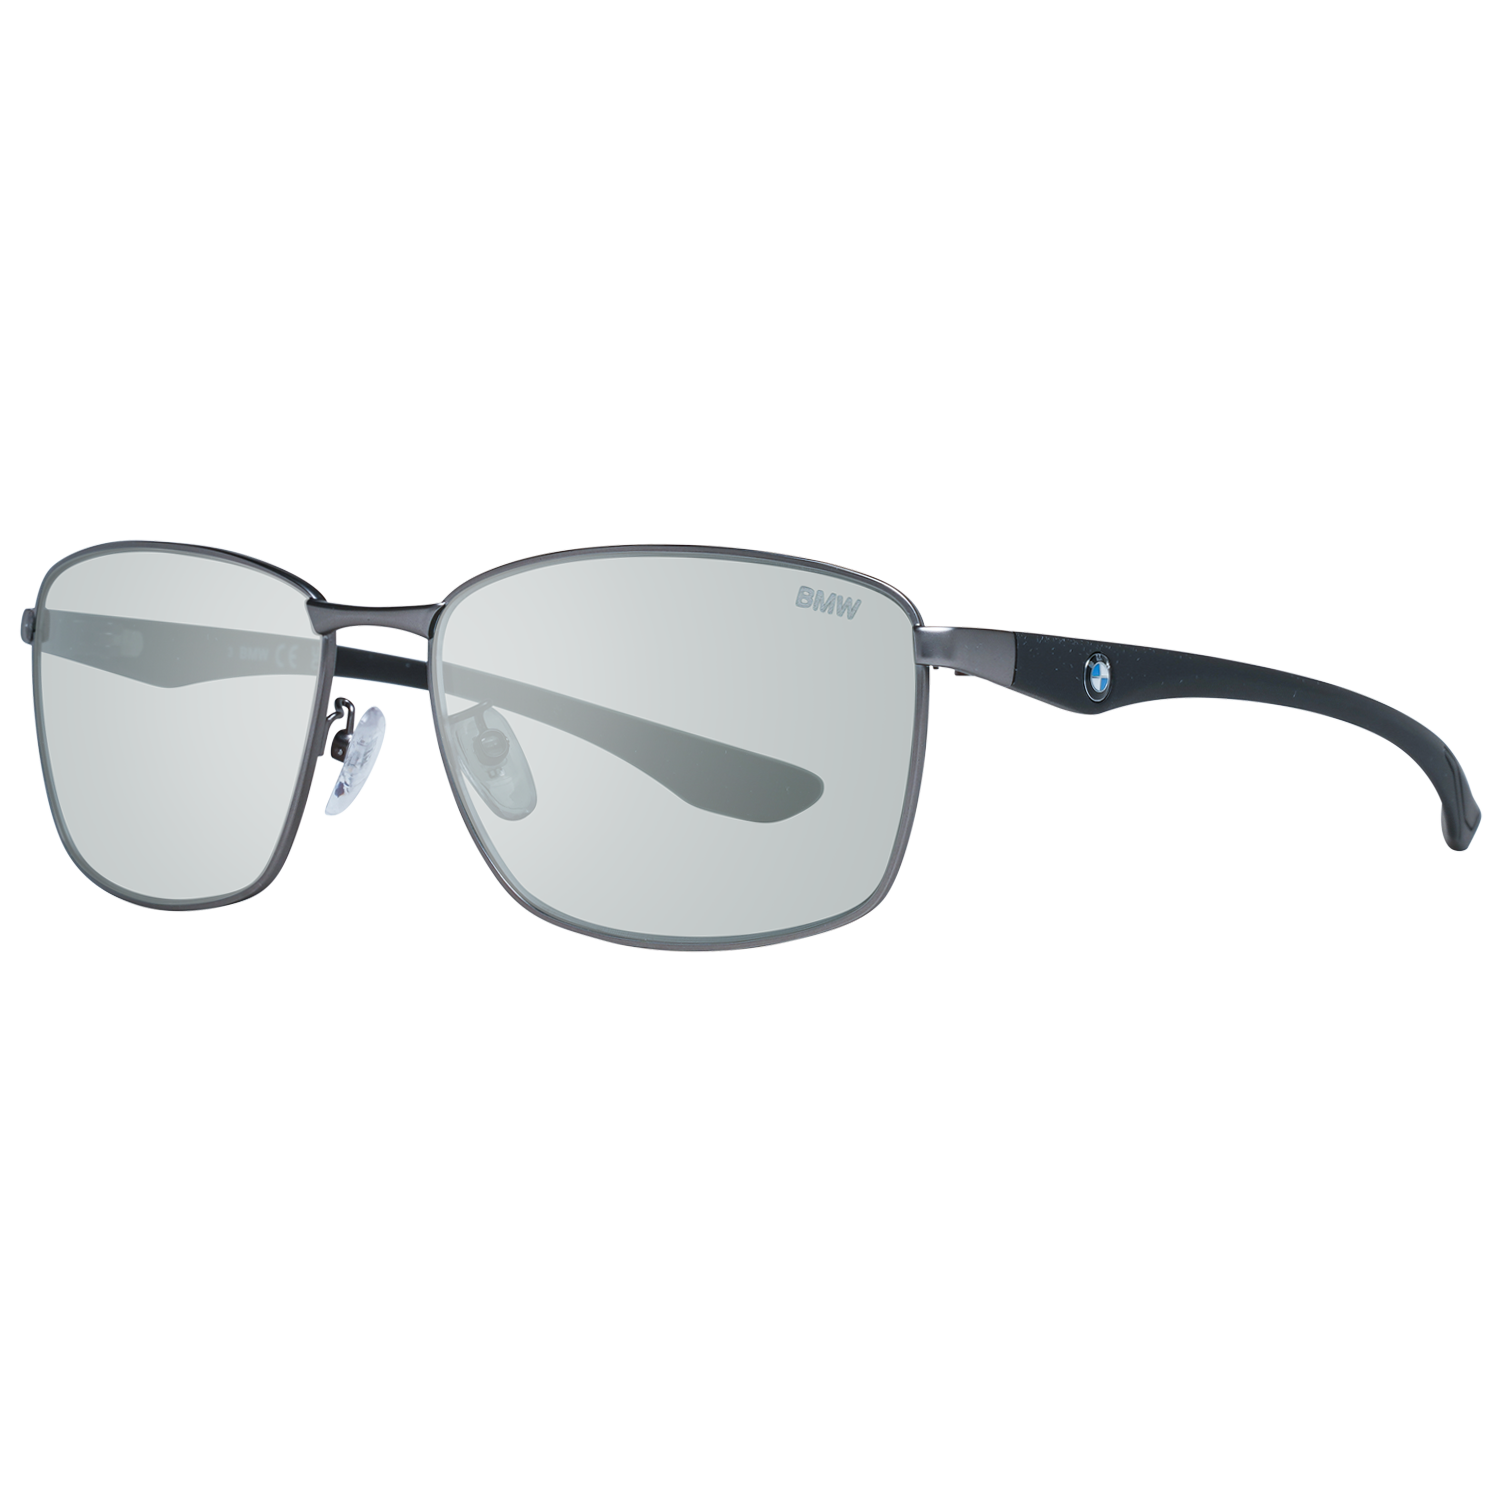 BMW Sunglasses BMW Sunglasses BW0013 13C 60 Eyeglasses Eyewear UK USA Australia 